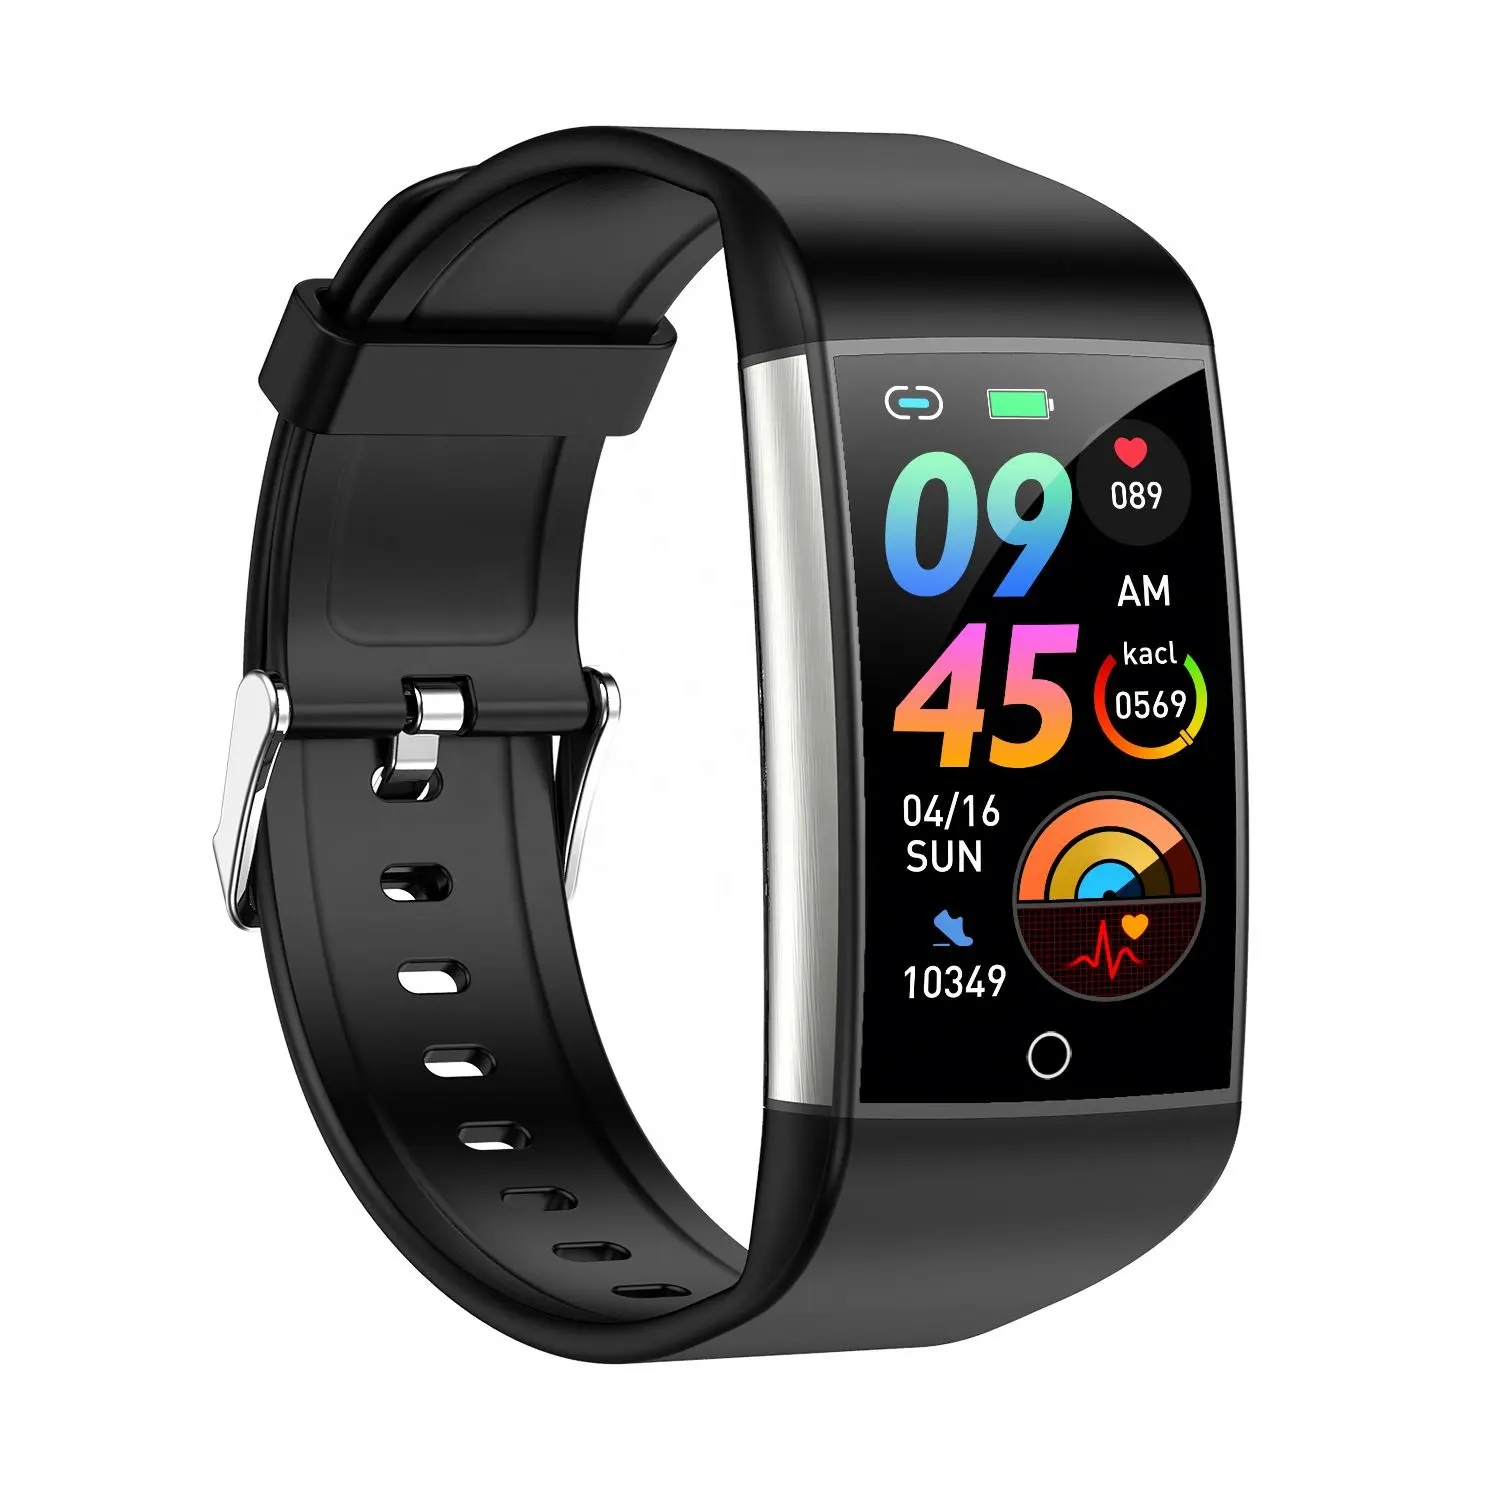 Weihnachten beliebt günstig wasserdicht smart watch großer bildschirm große batteriekapazität unterstützt mehrere gesundheitsmonitore